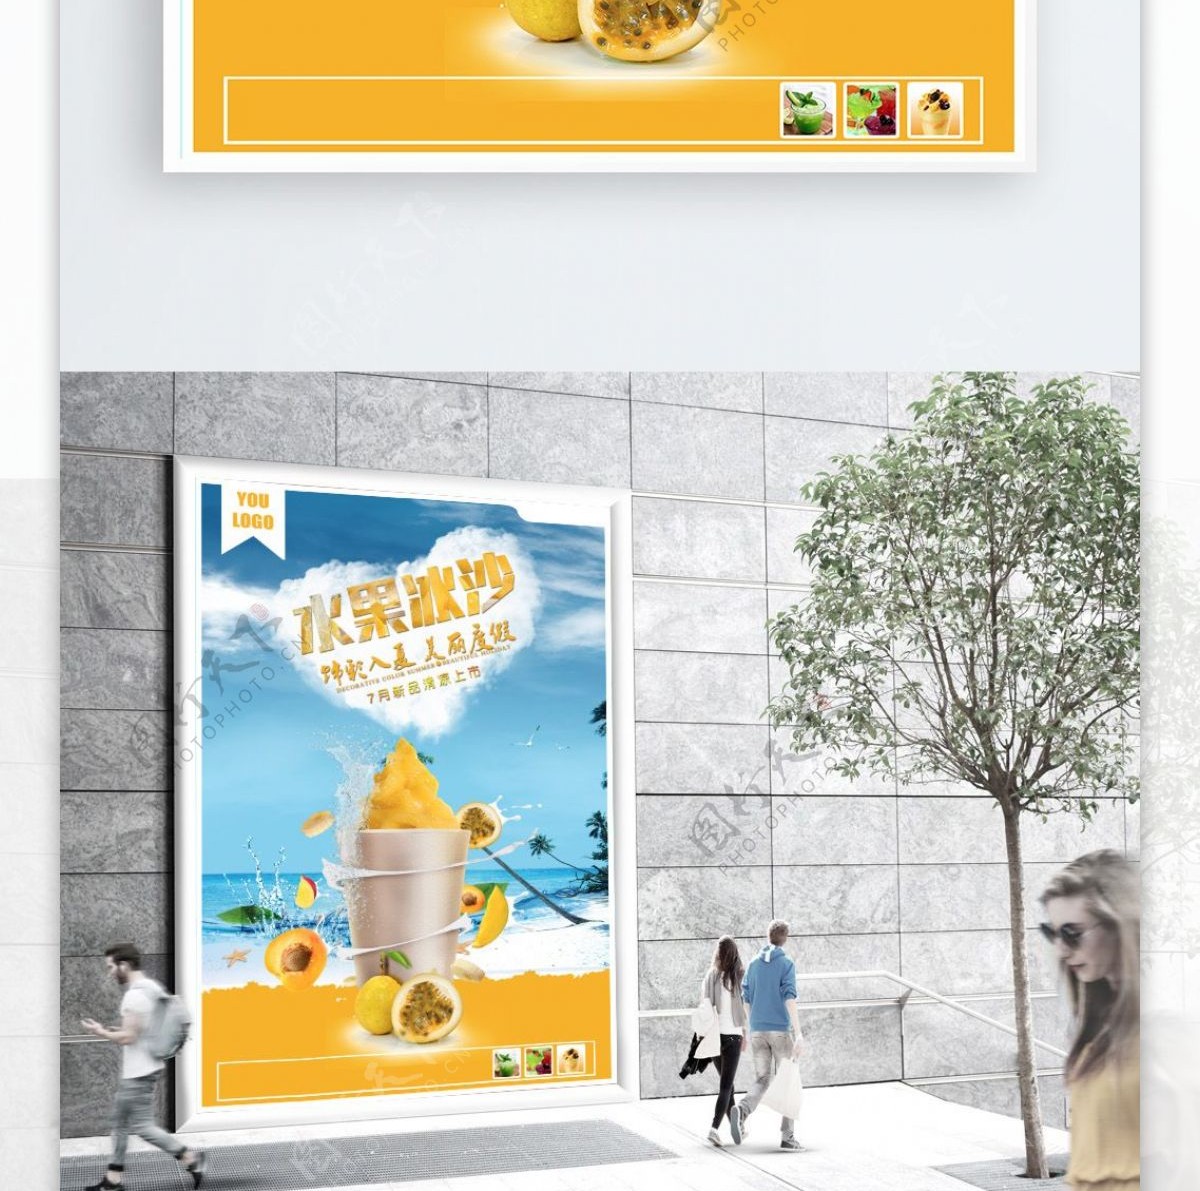 水果店芒果果汁广告海报